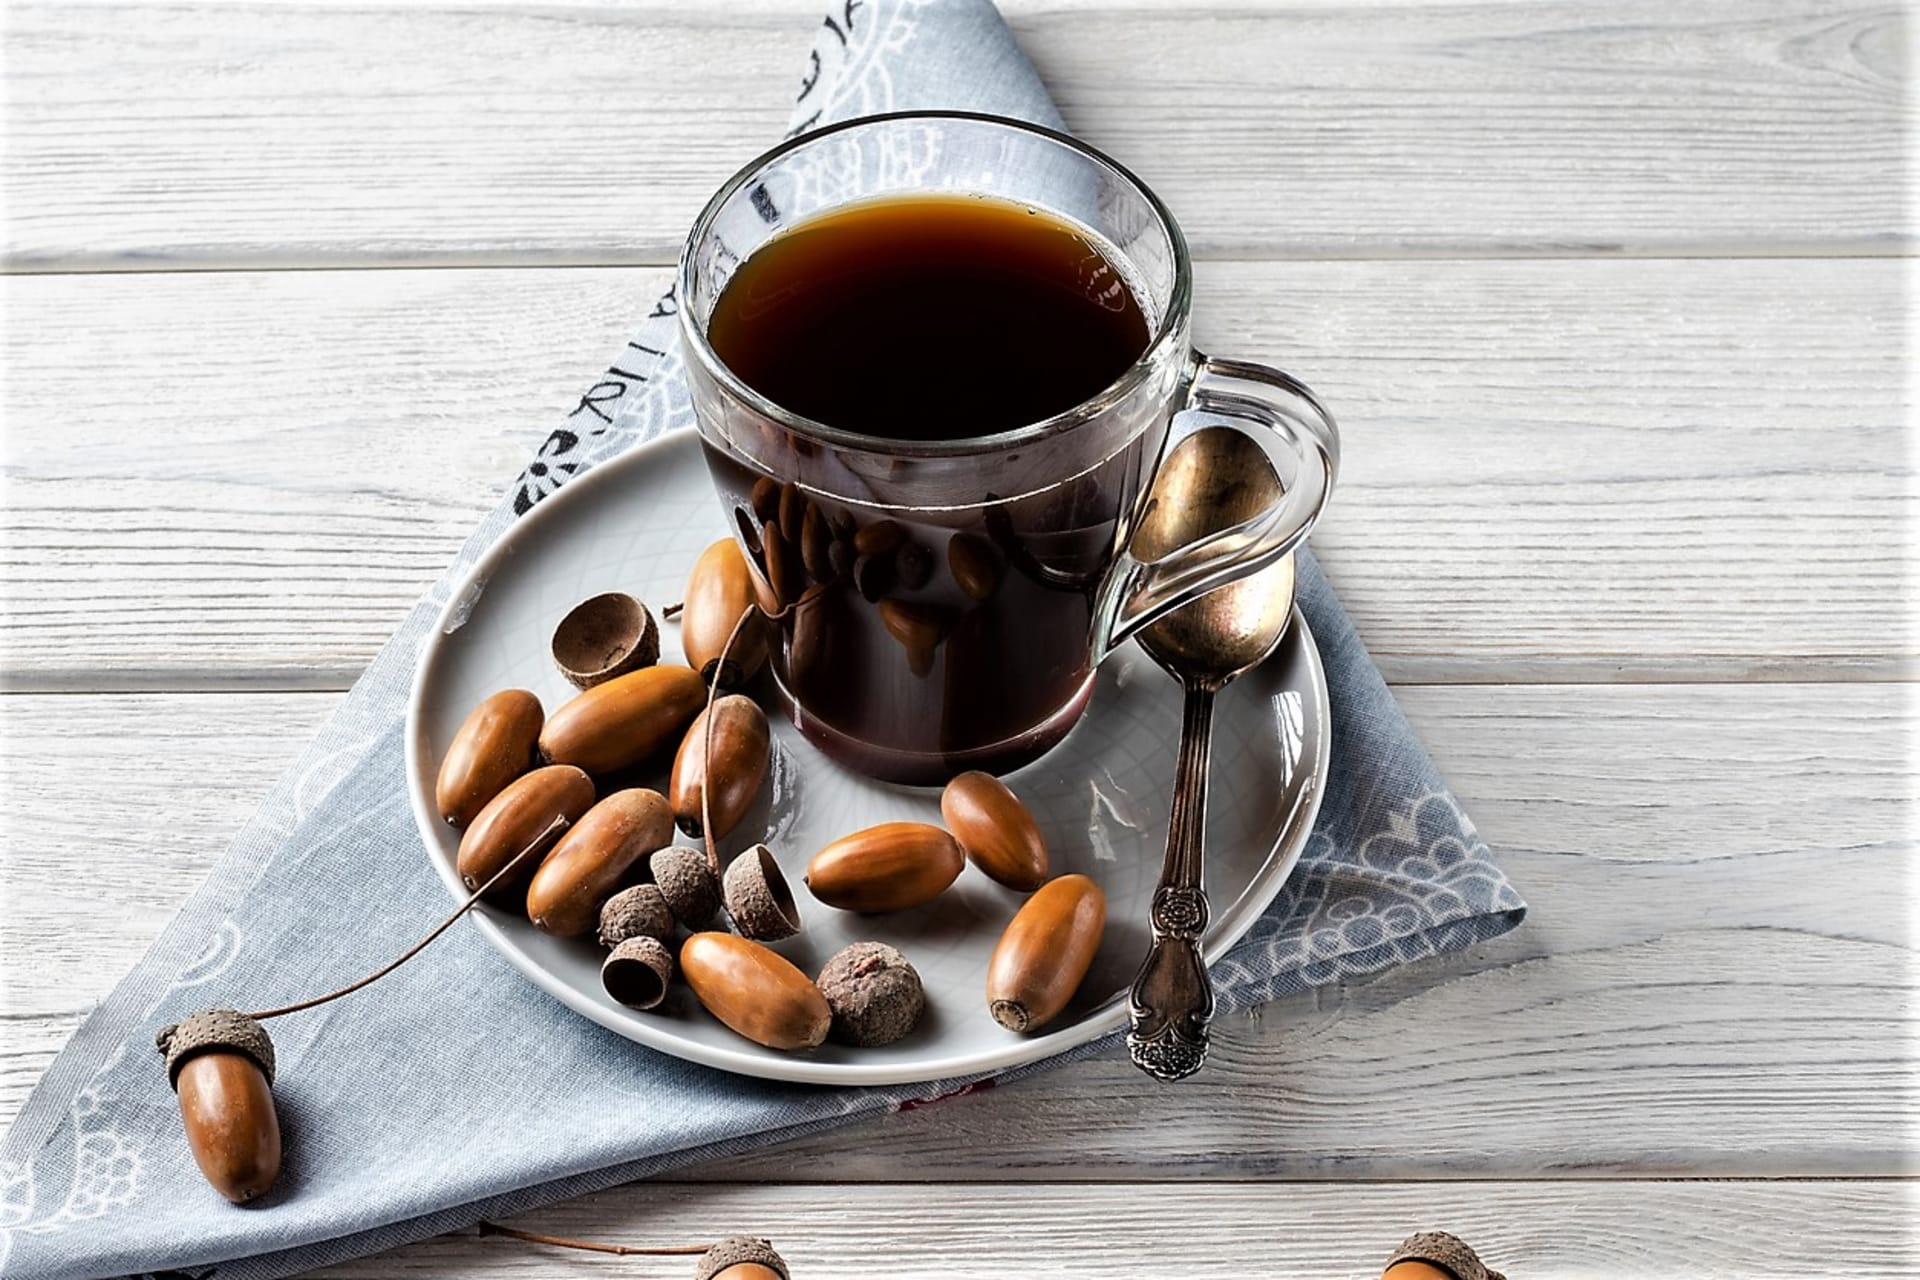 Žaludovka je bezkofeinová náhražka zrnkové kávy. Nasbírejte žaludy a udělejte si ji doma 